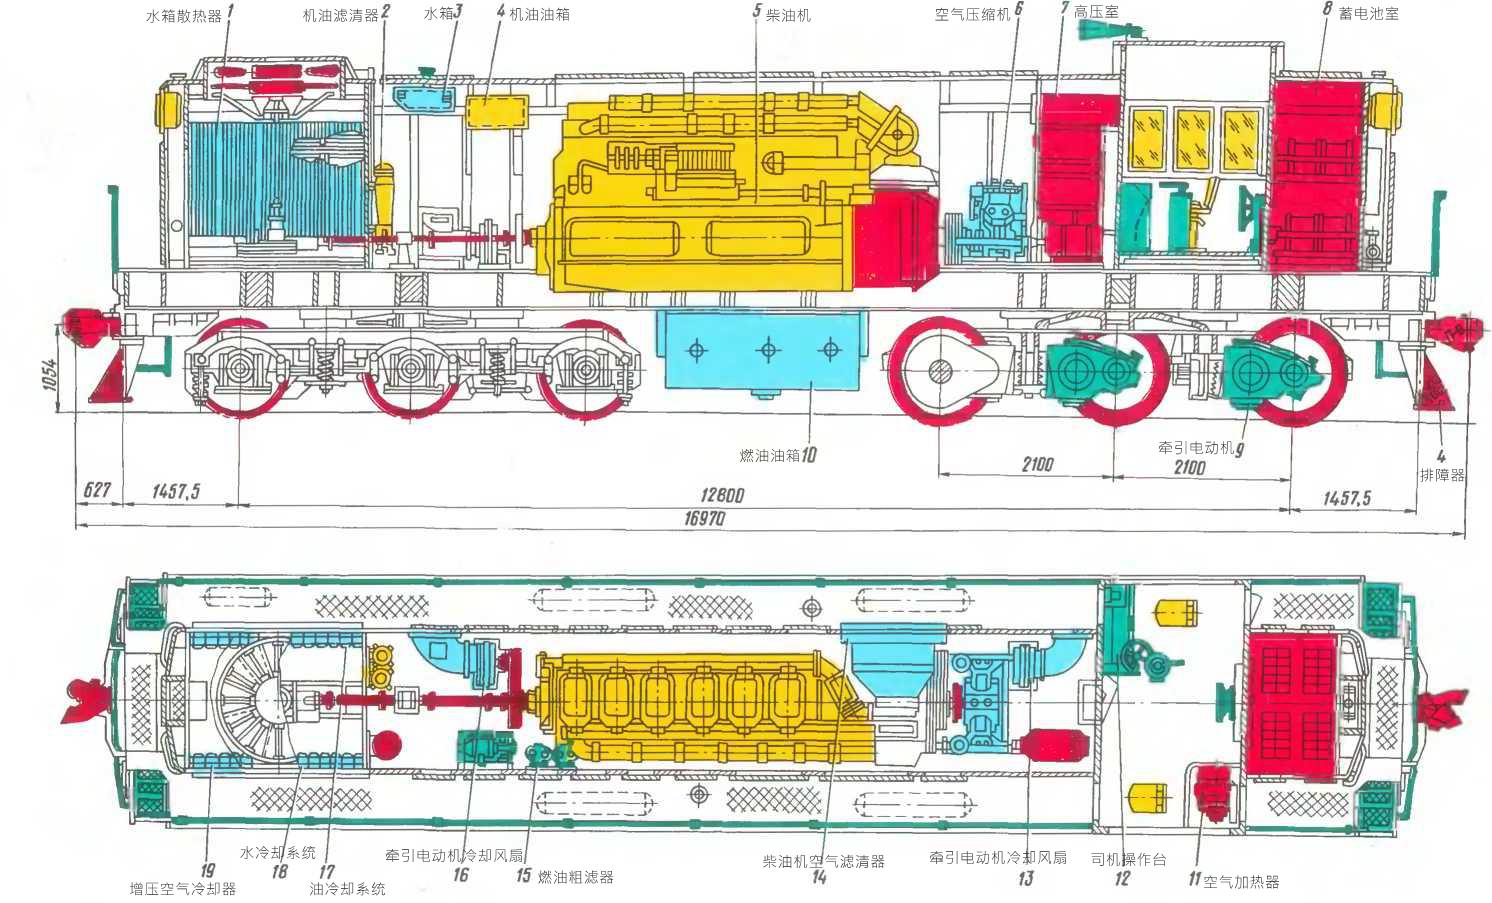 总体结构tem2型内燃机车适用于1435毫米标准轨距或者是1520毫米宽轨